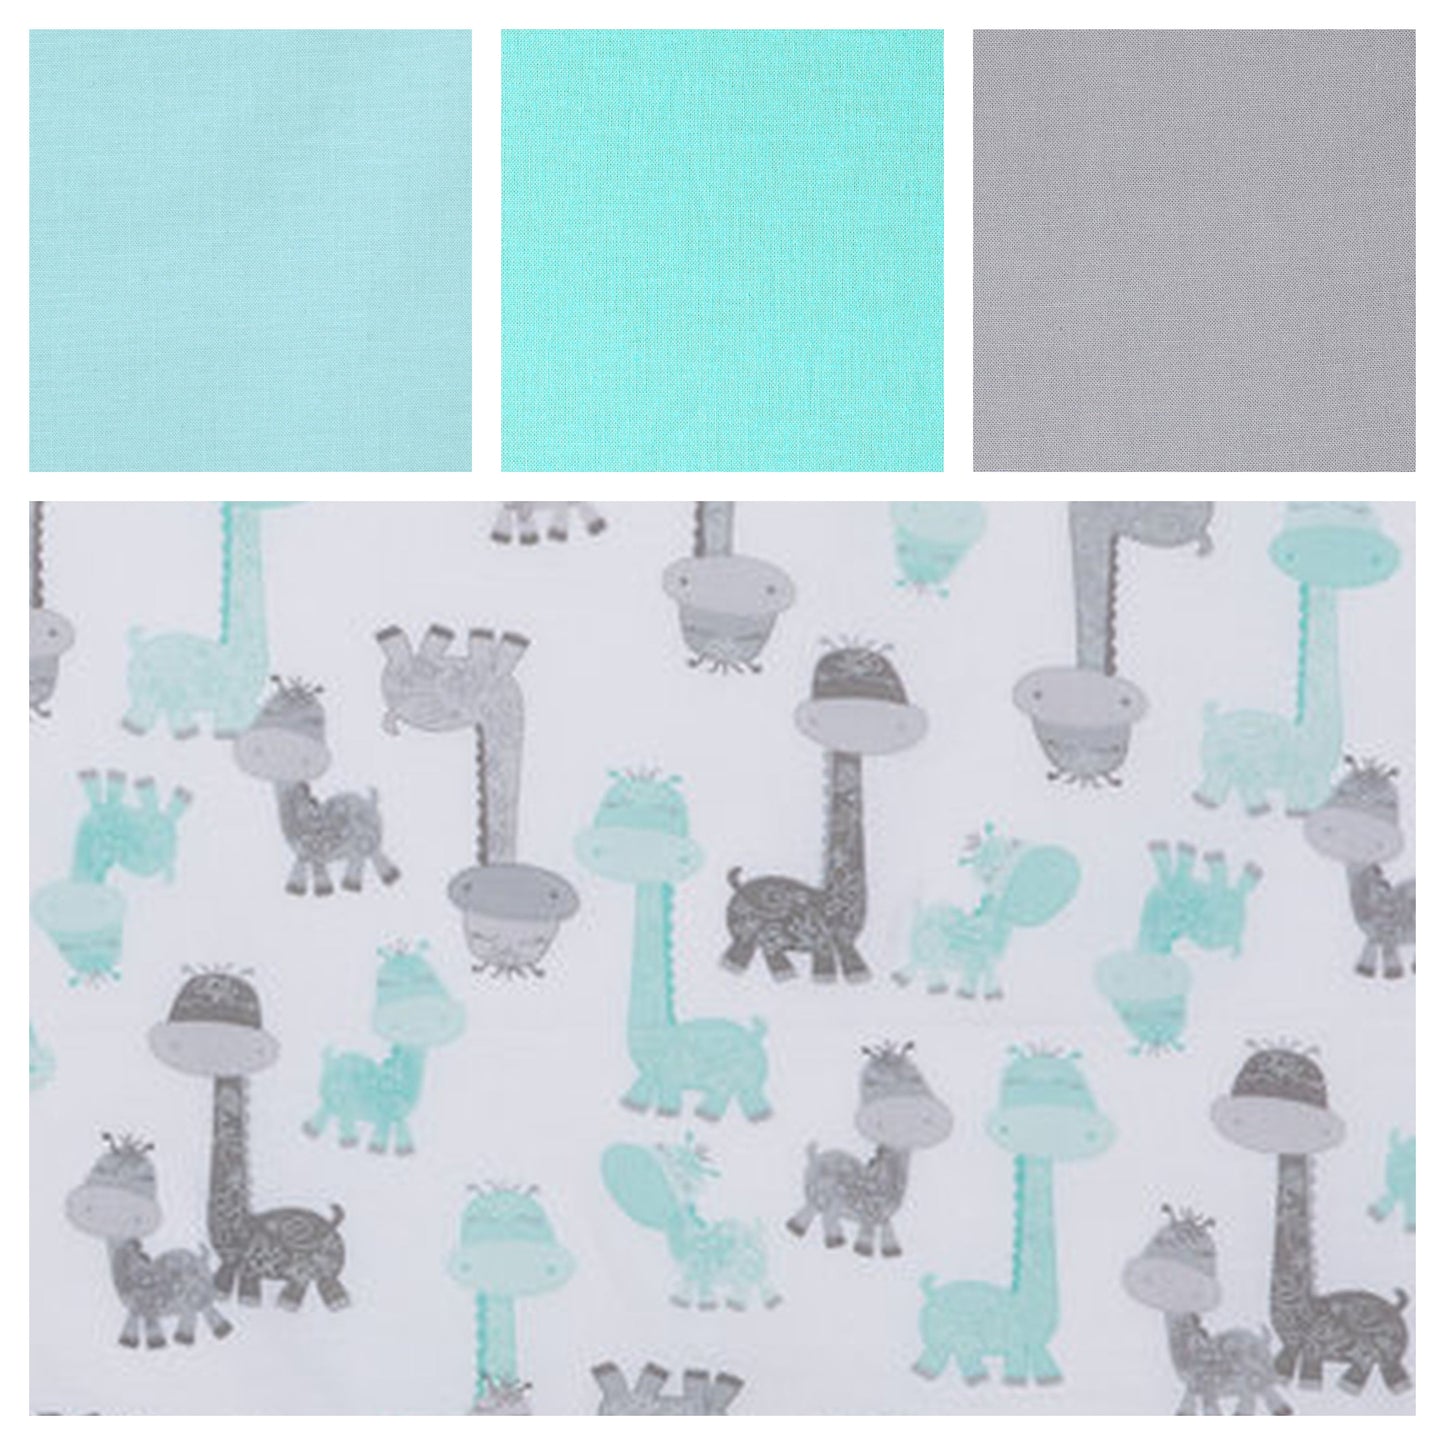 gray and aqua giraffe fabric cotton options, light blue, aqua & gray